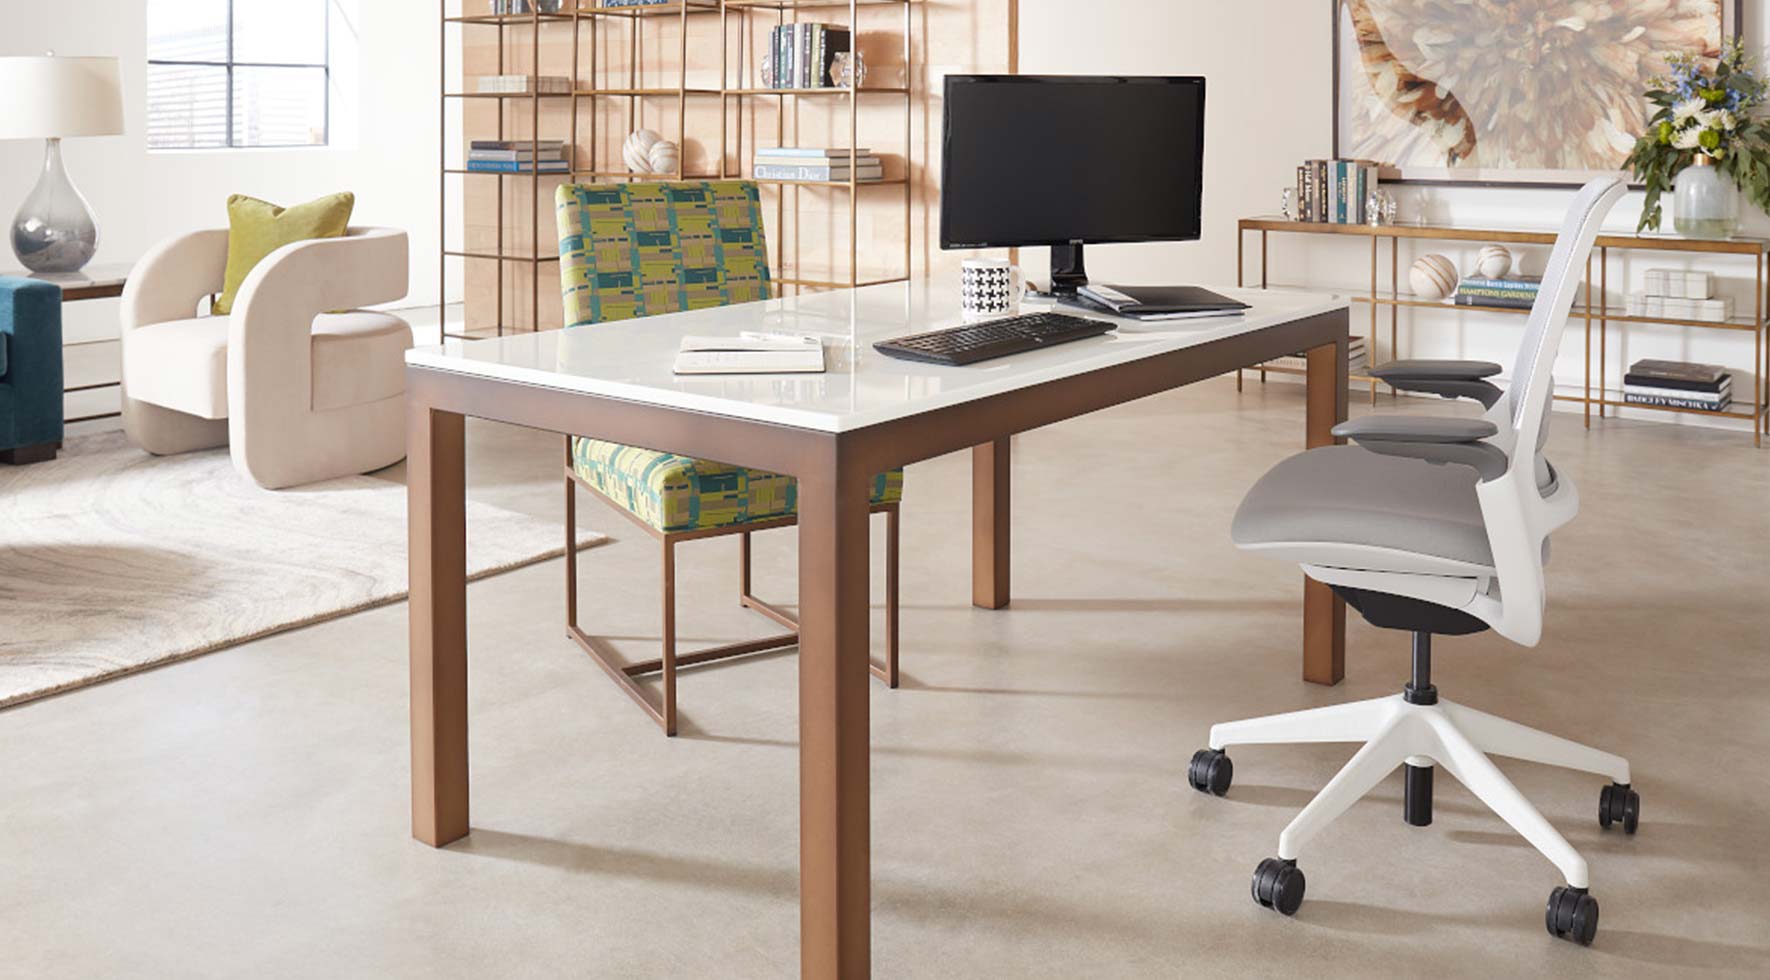 Sitting Desk With Footrest, Home Office Desk, Work From Home Desks